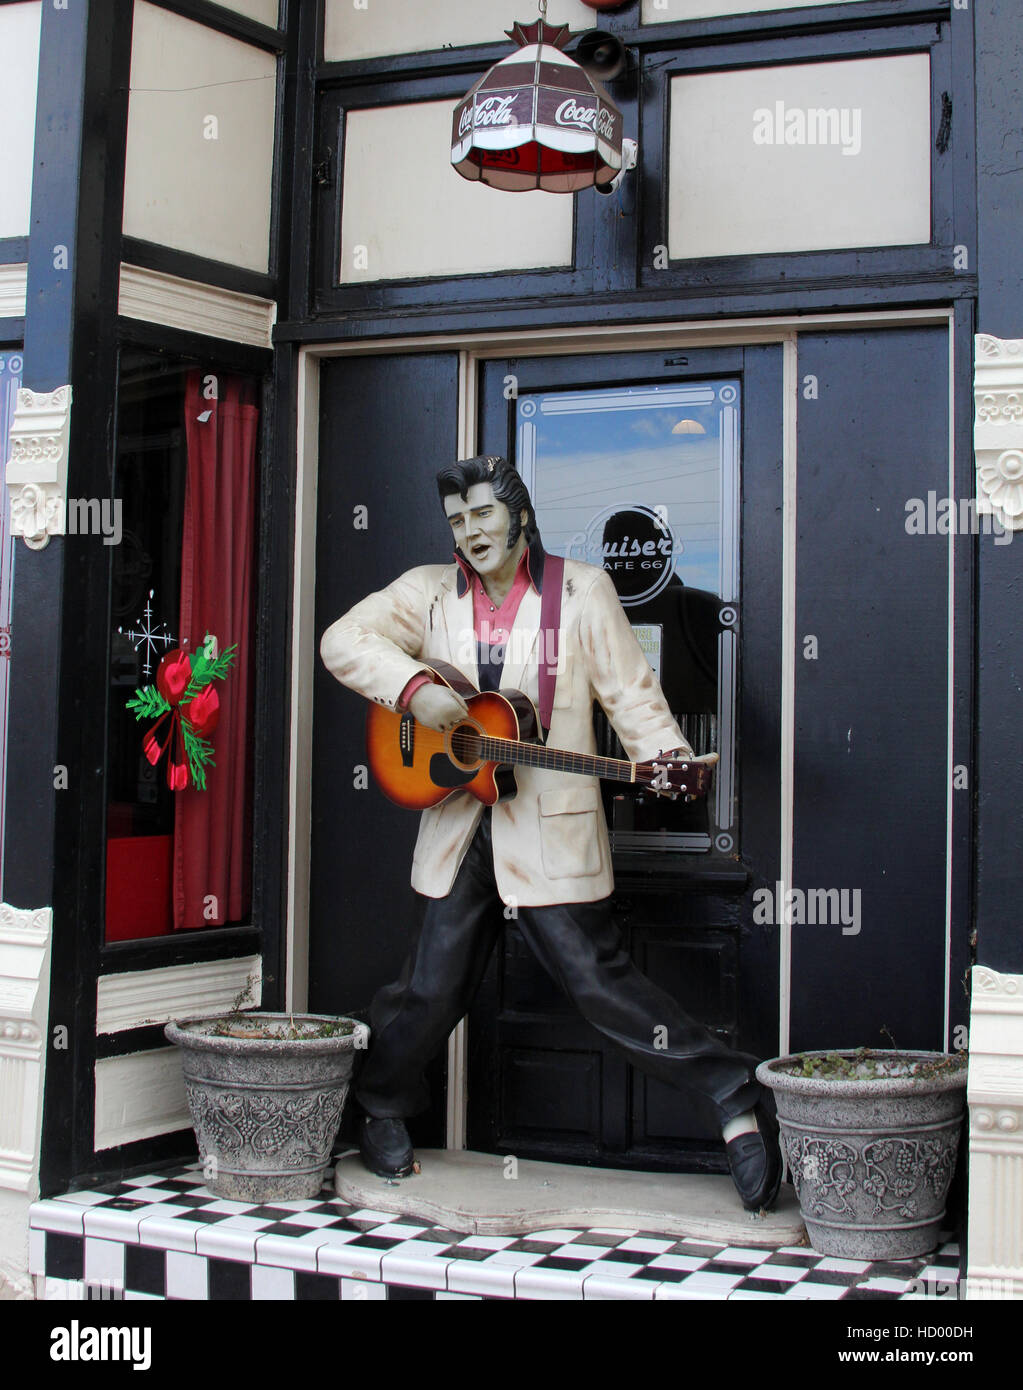 Statua di Elvis strimpella la sua chitarra in Williams Arizona sul percorso 66. Una ghirlanda di Natale adorna la finestra Foto Stock